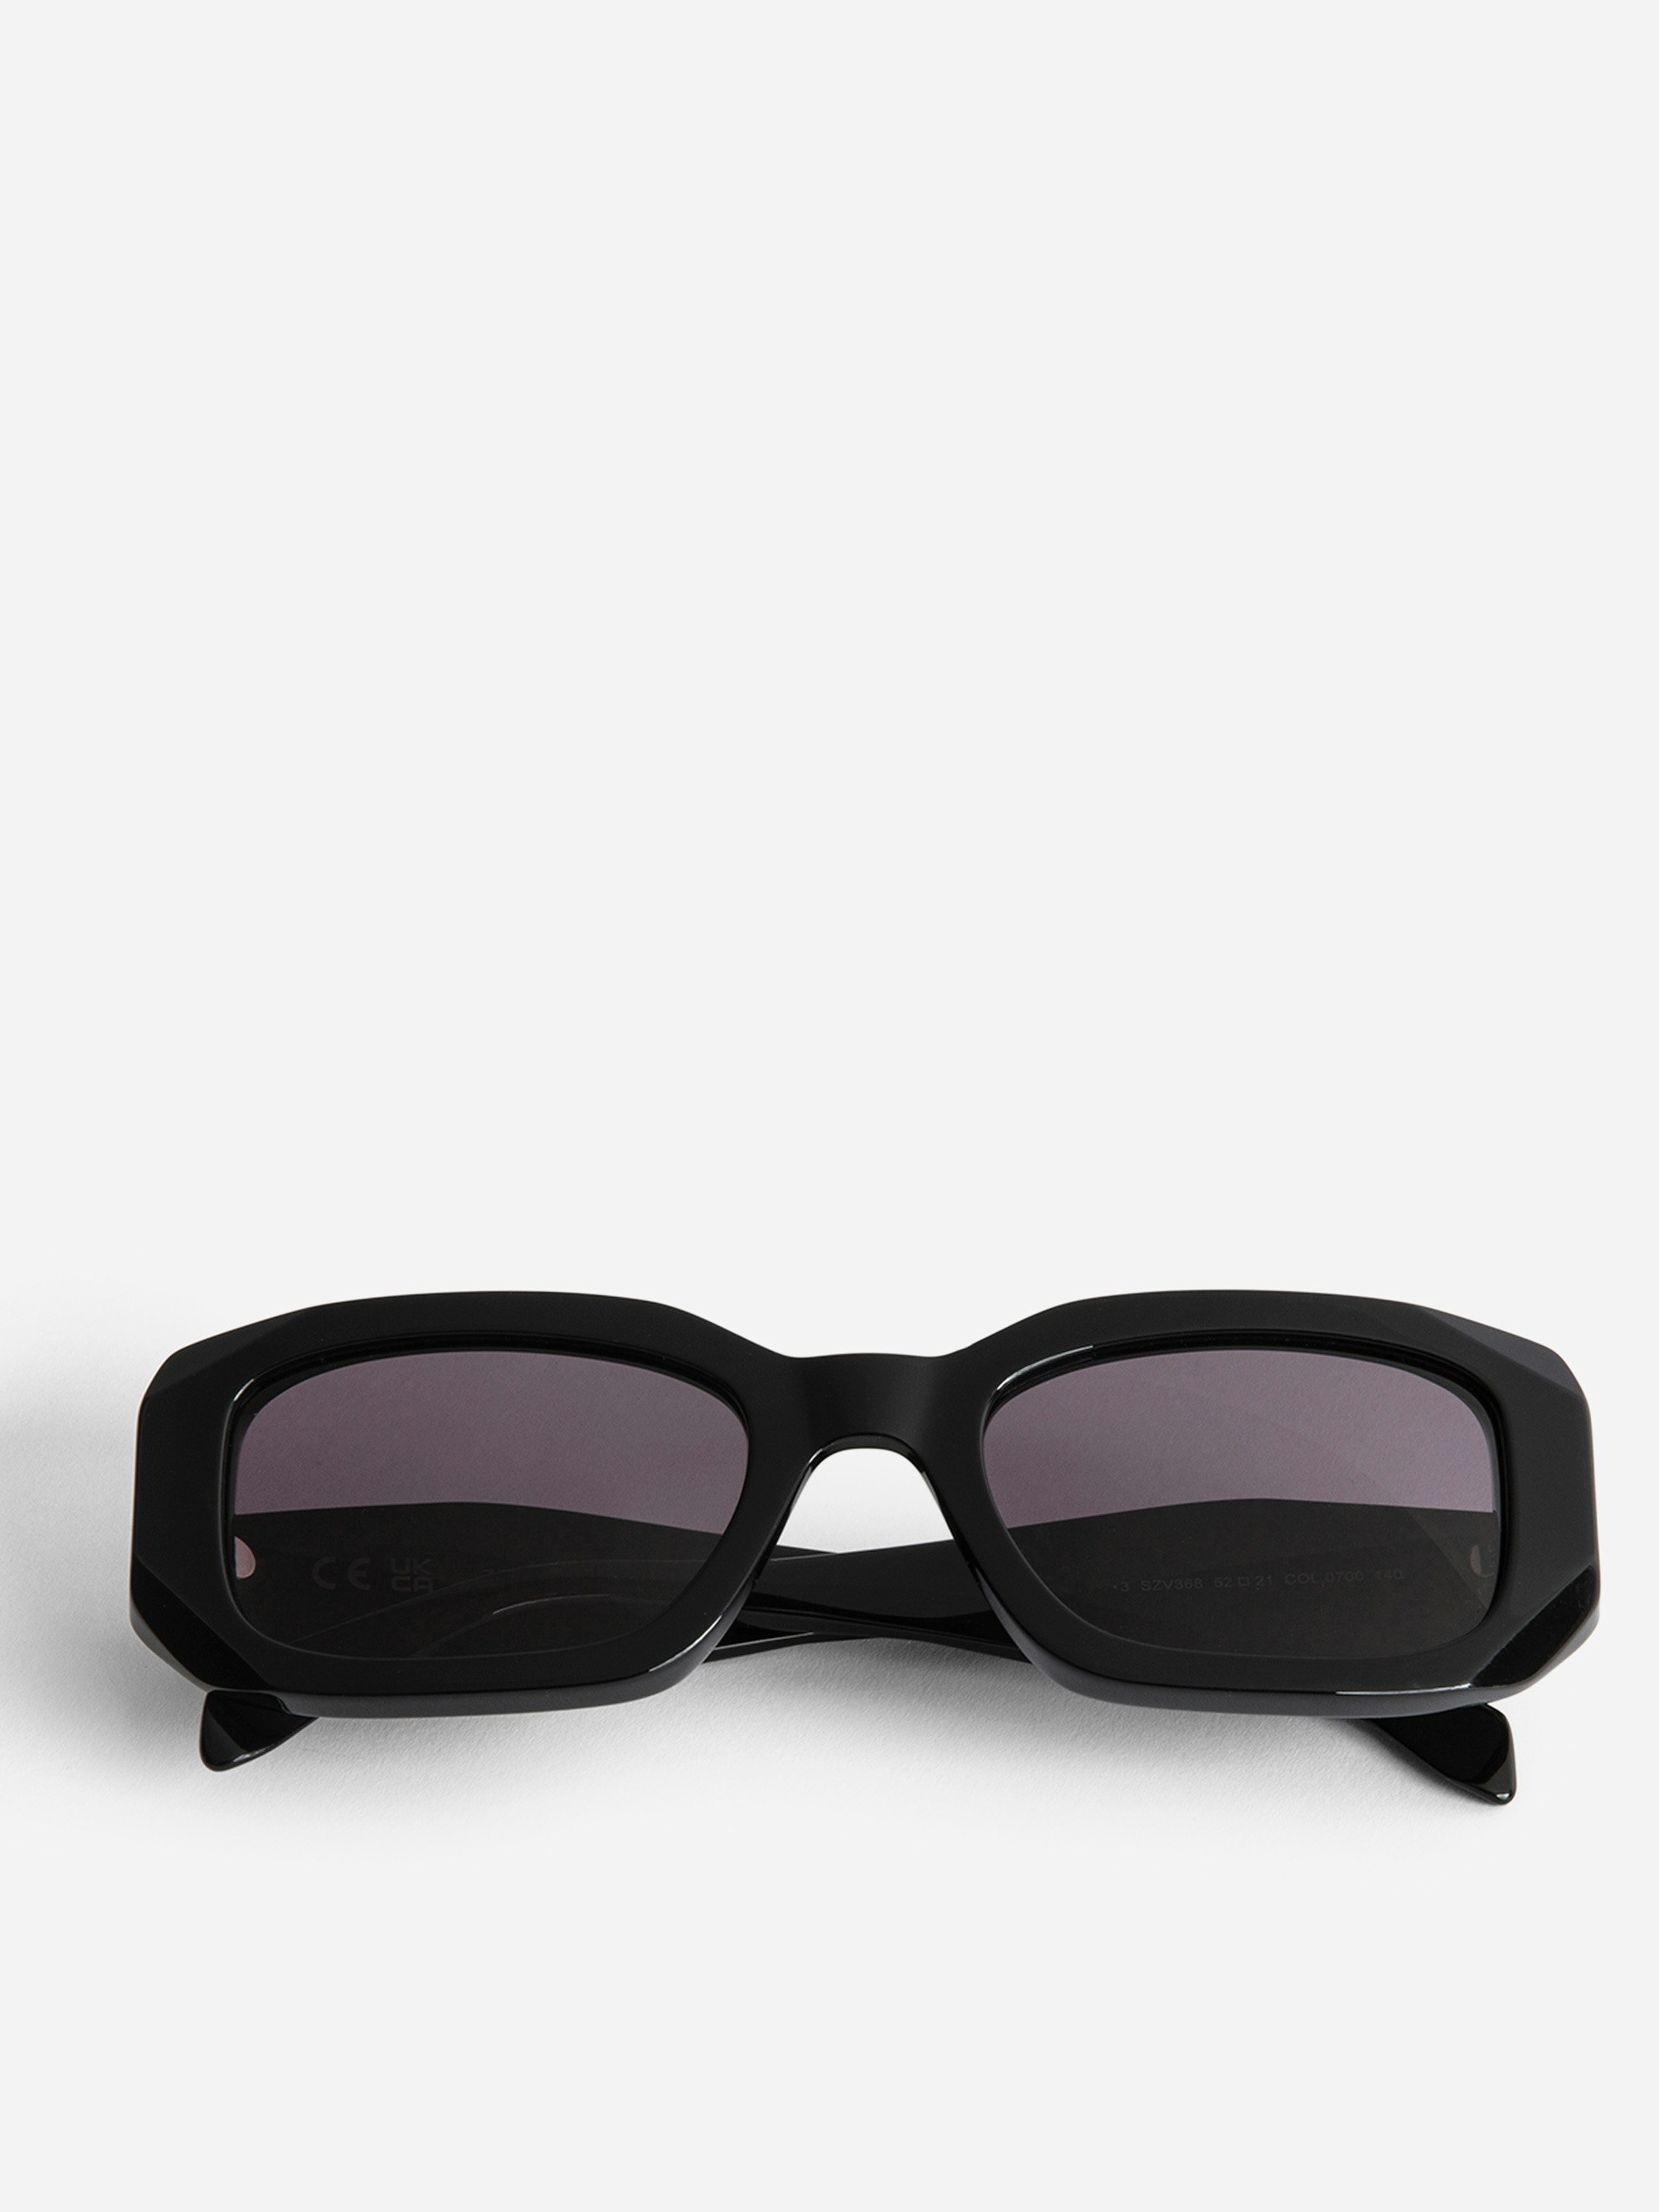 Gafas de sol ZV23H3 - Gafas de sol unisex rectangulares de color negro con patillas desestructuradas con alas.